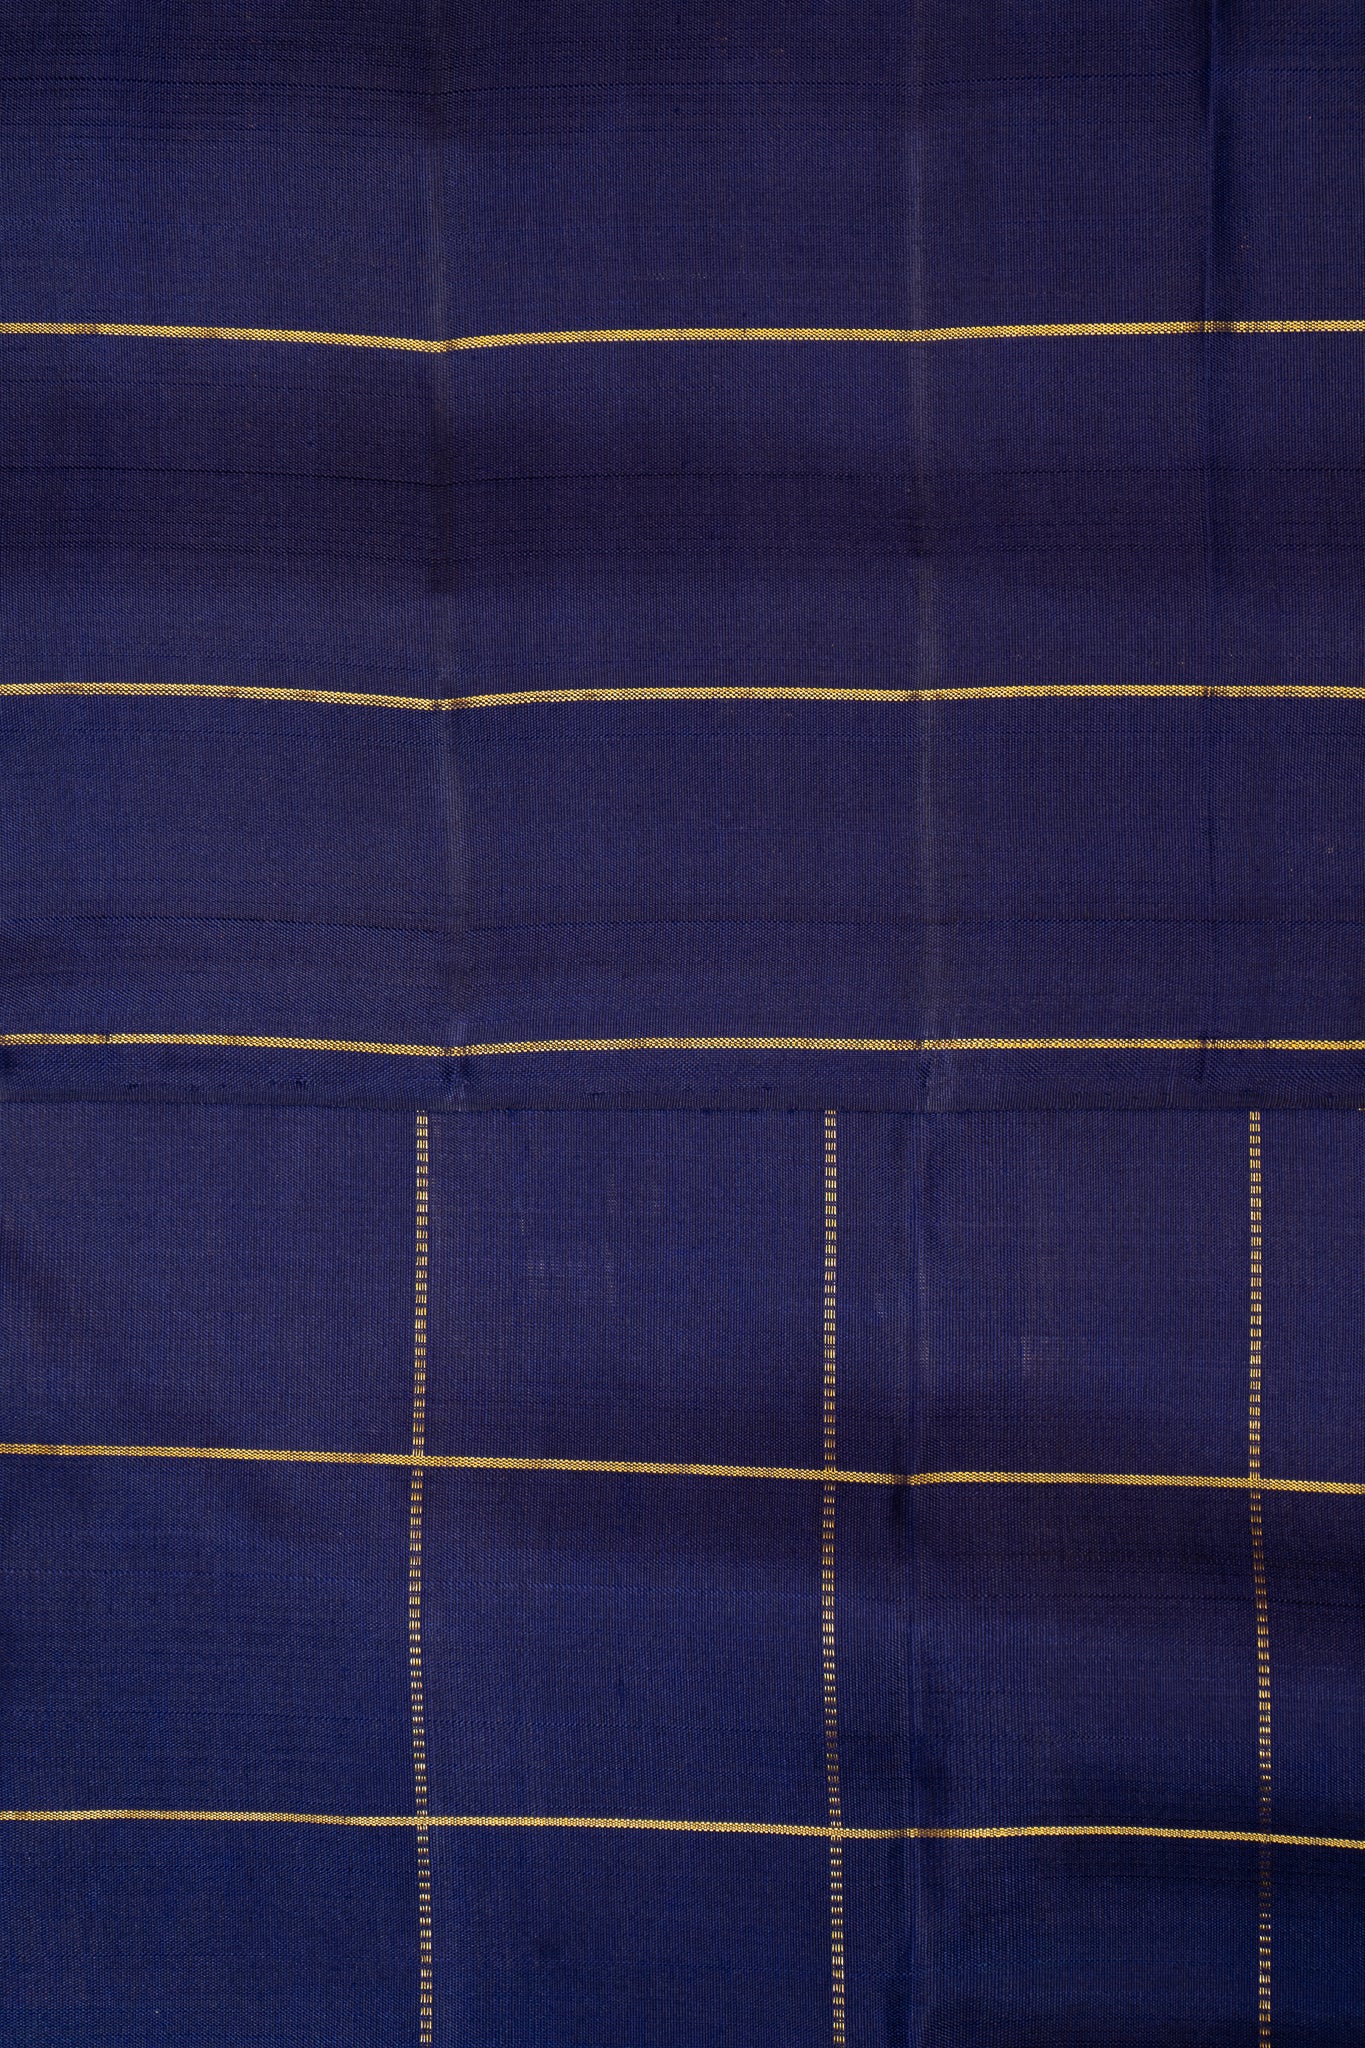 Pink and Navy Blue Half and Half Checks Kanjivaram Silk Sari - Clio Silks